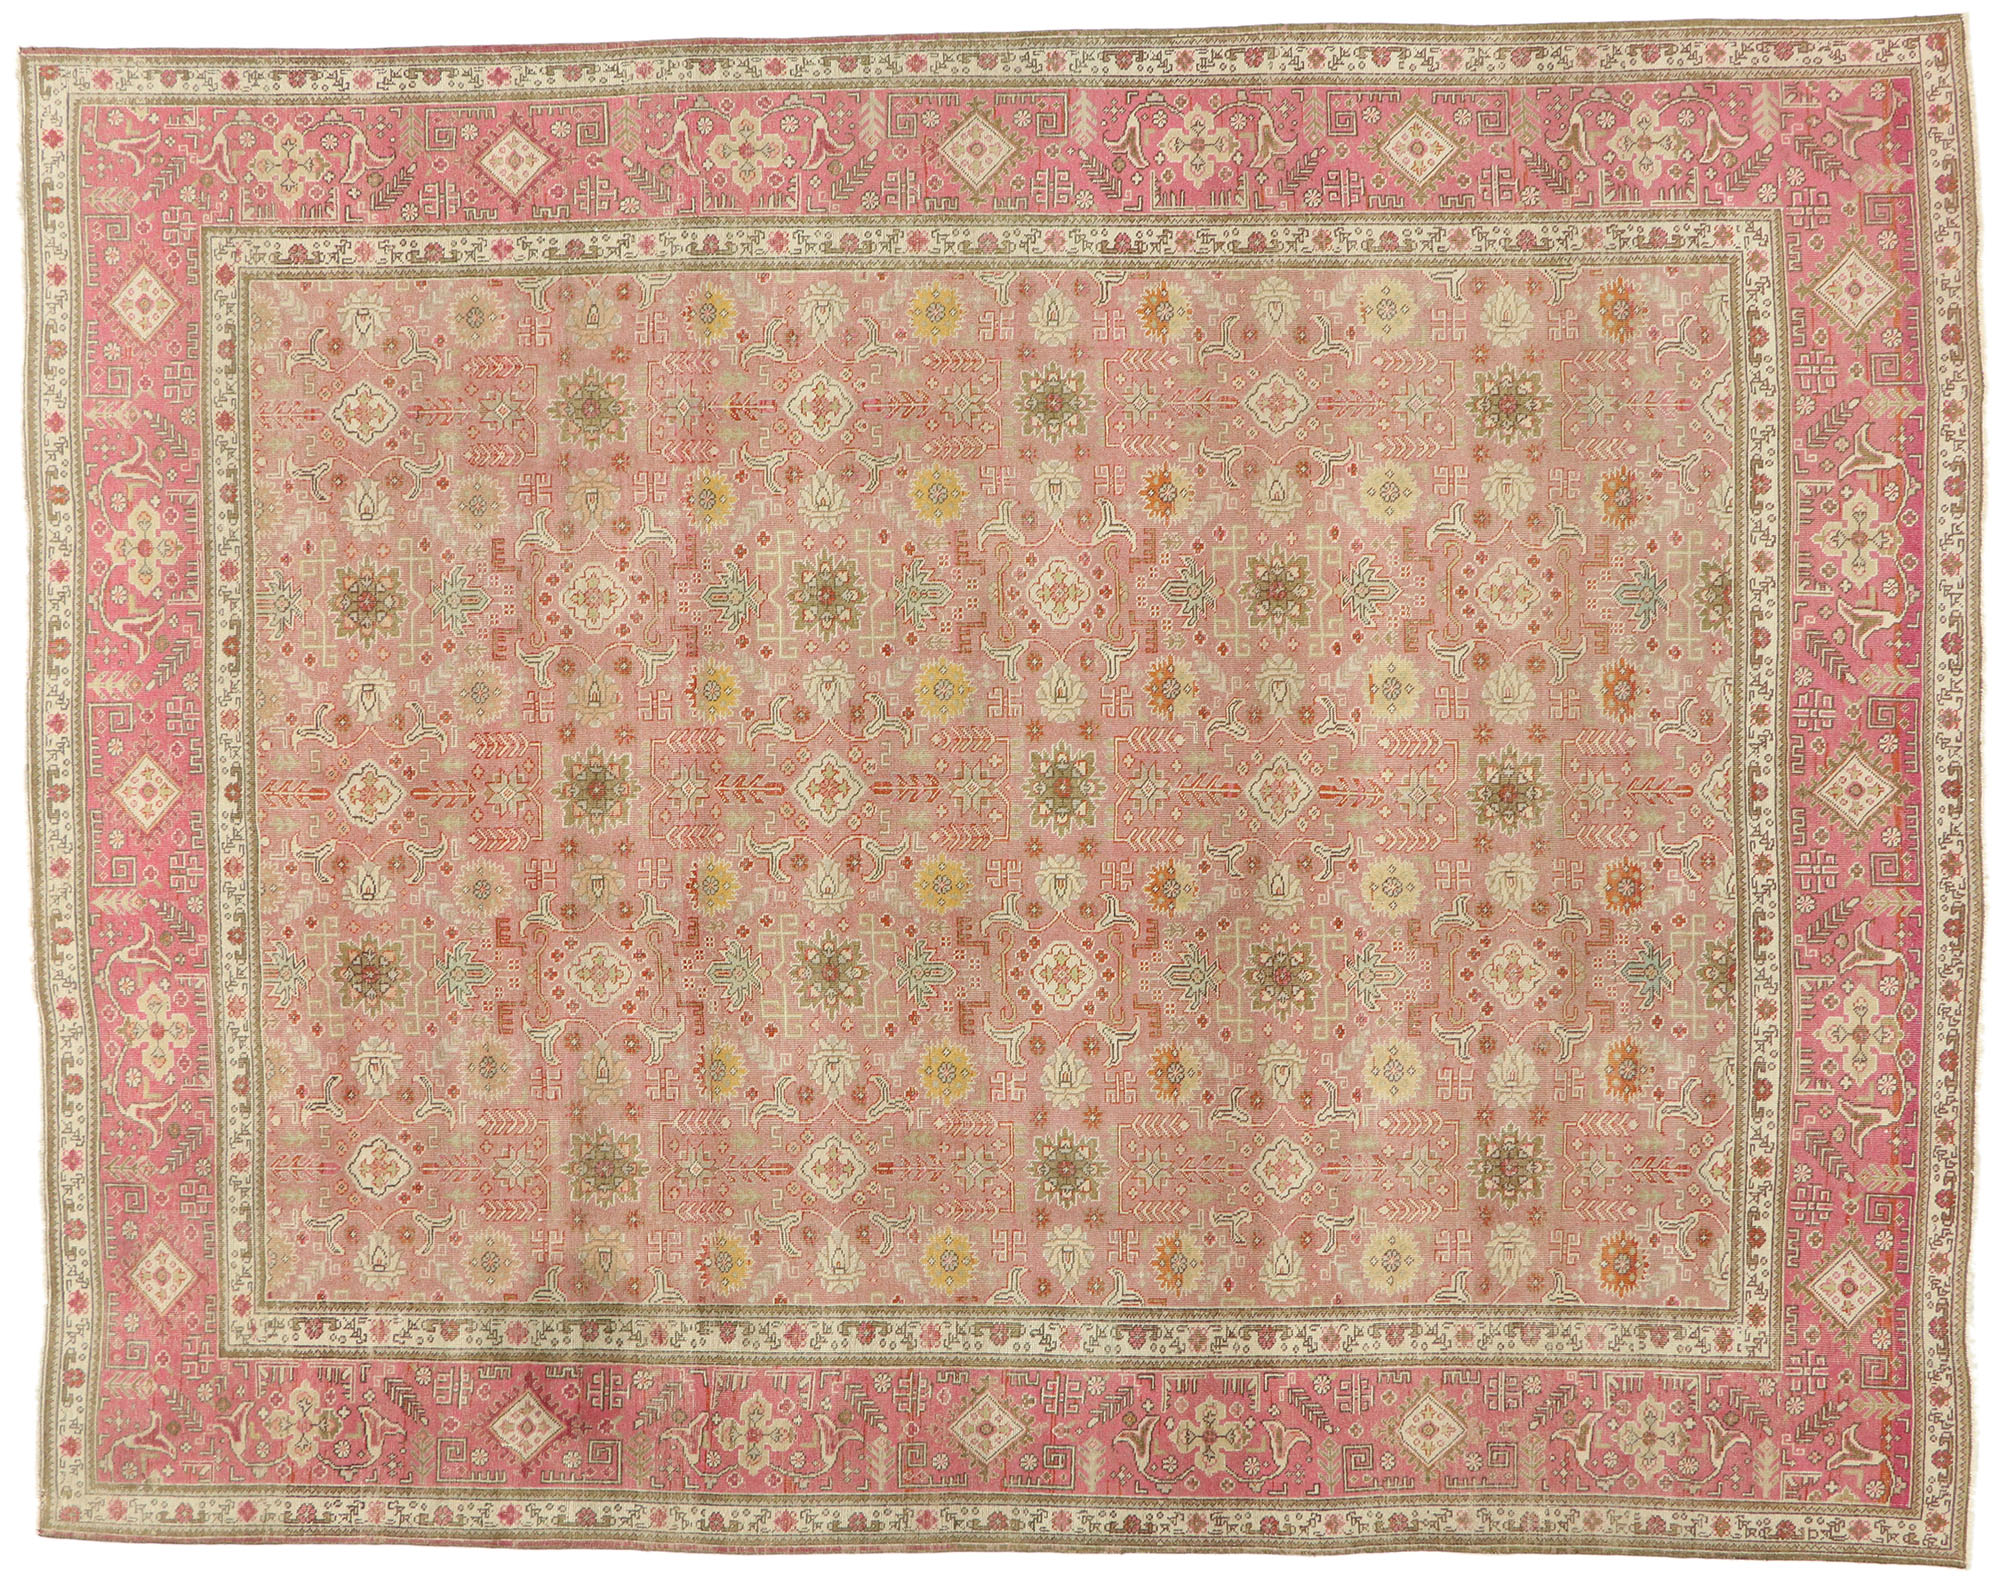 10 X 13 Vintage Persian Tabriz Rug 53163, Rosy Chic Rug